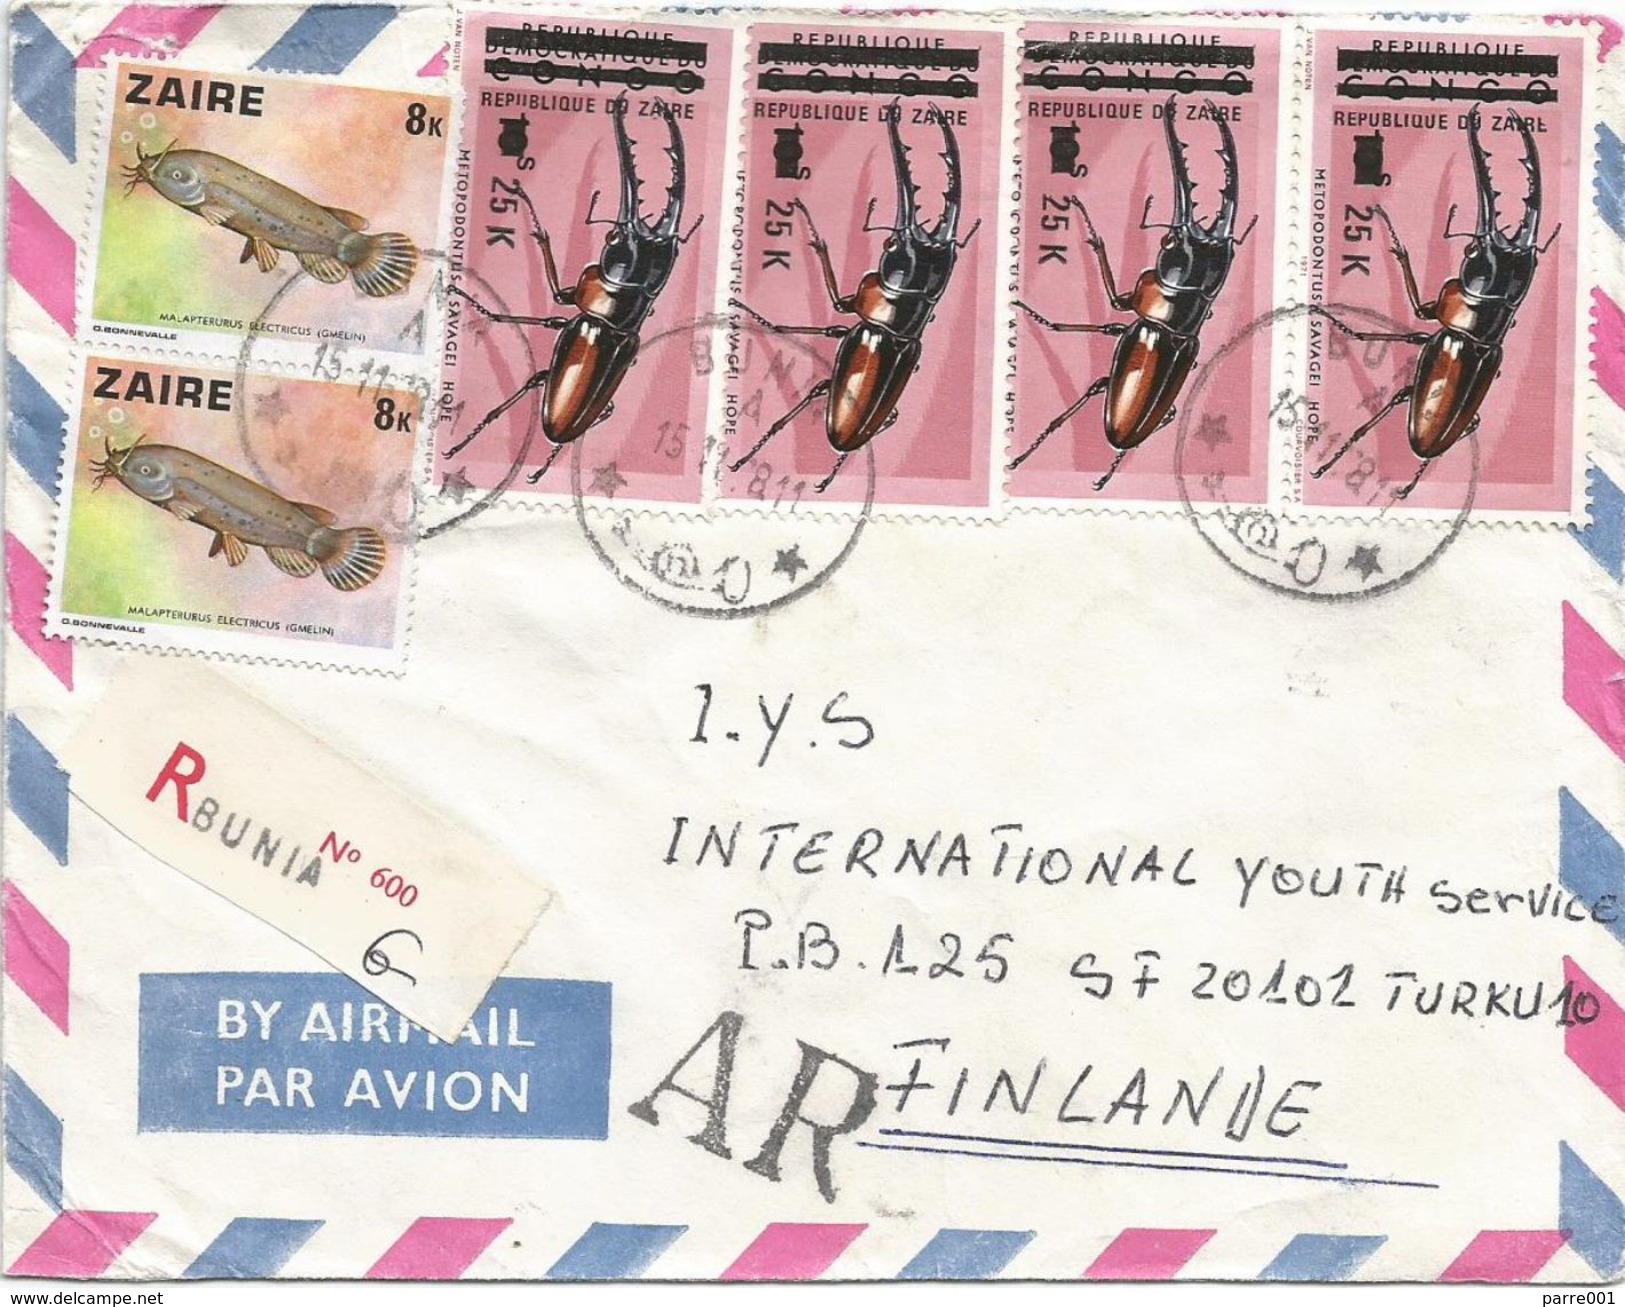 Zaire DRC RDC Congo 1987 Bunia 25k Beetle Overprint Michel 542 Freshwater Fish Registered AR Avis De Reception Cover - Gebruikt